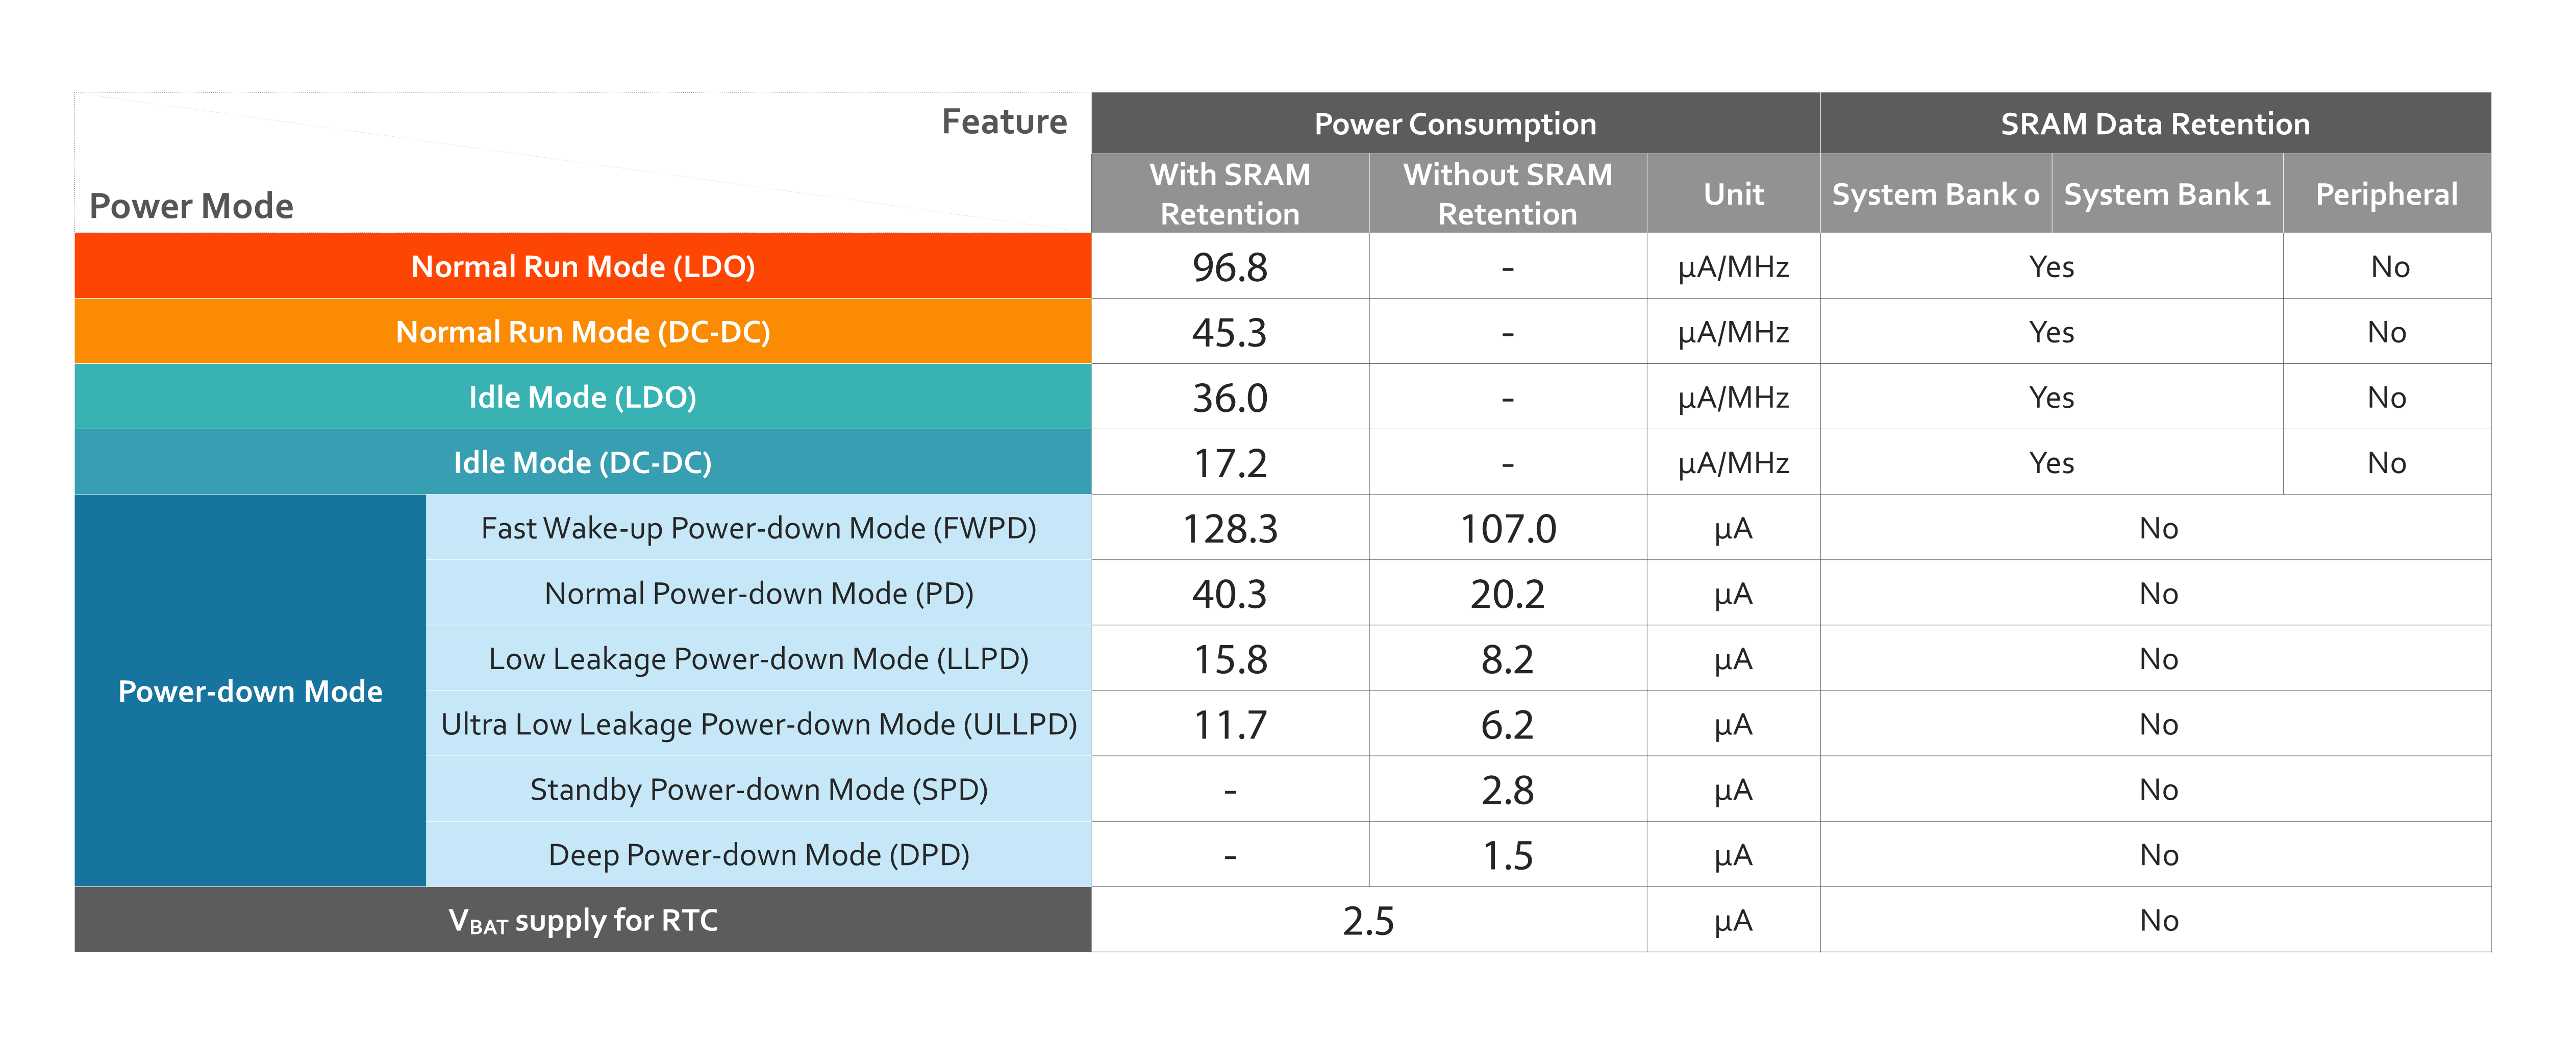 M2351 Series Power Consumption Comparison